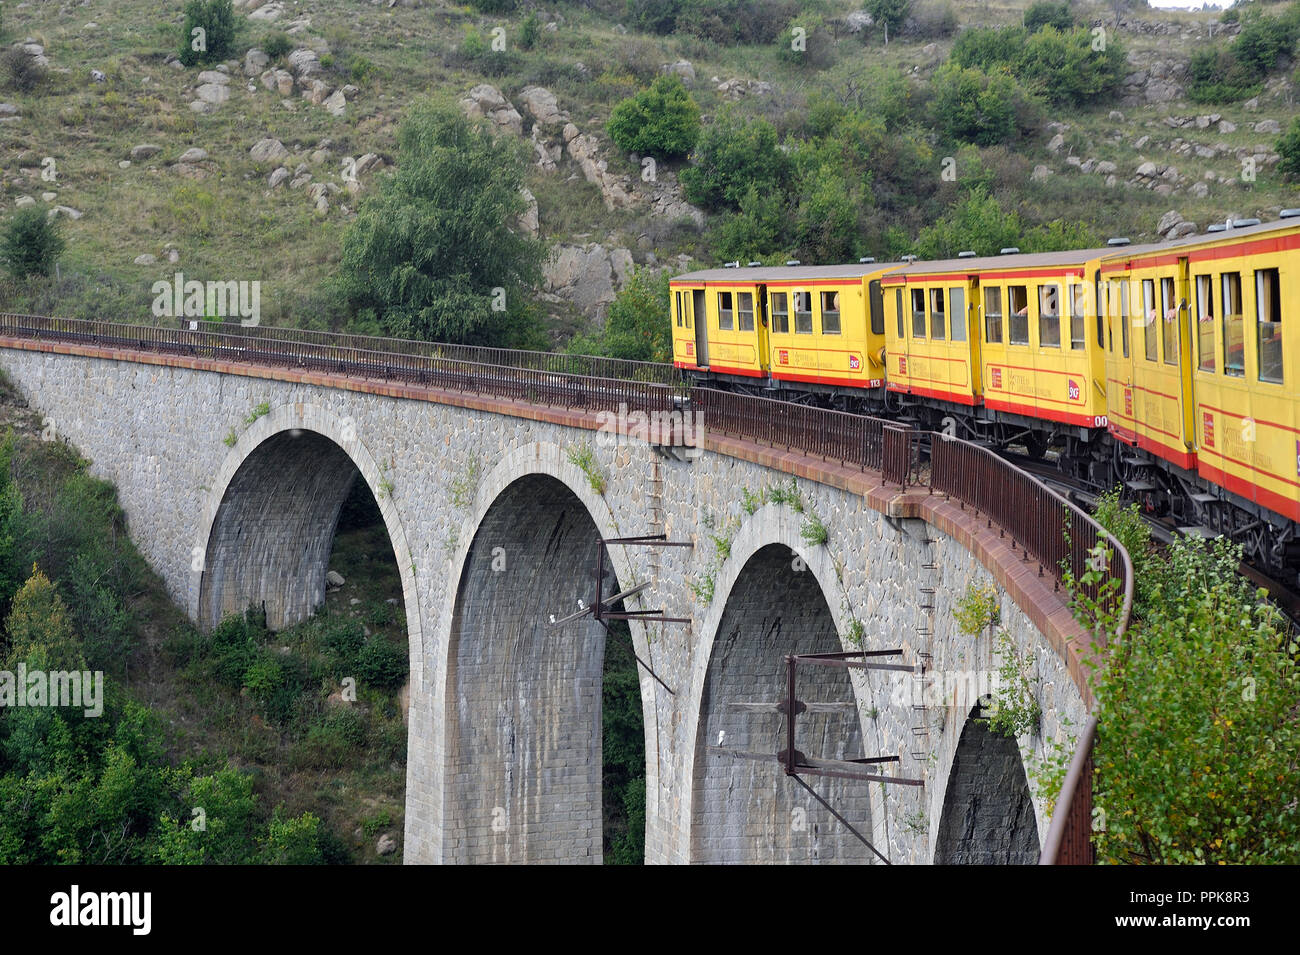 Der kleine gelbe Zug der Pyrenäen Überquerung einer wunderschönen Berglandschaft Stockfoto